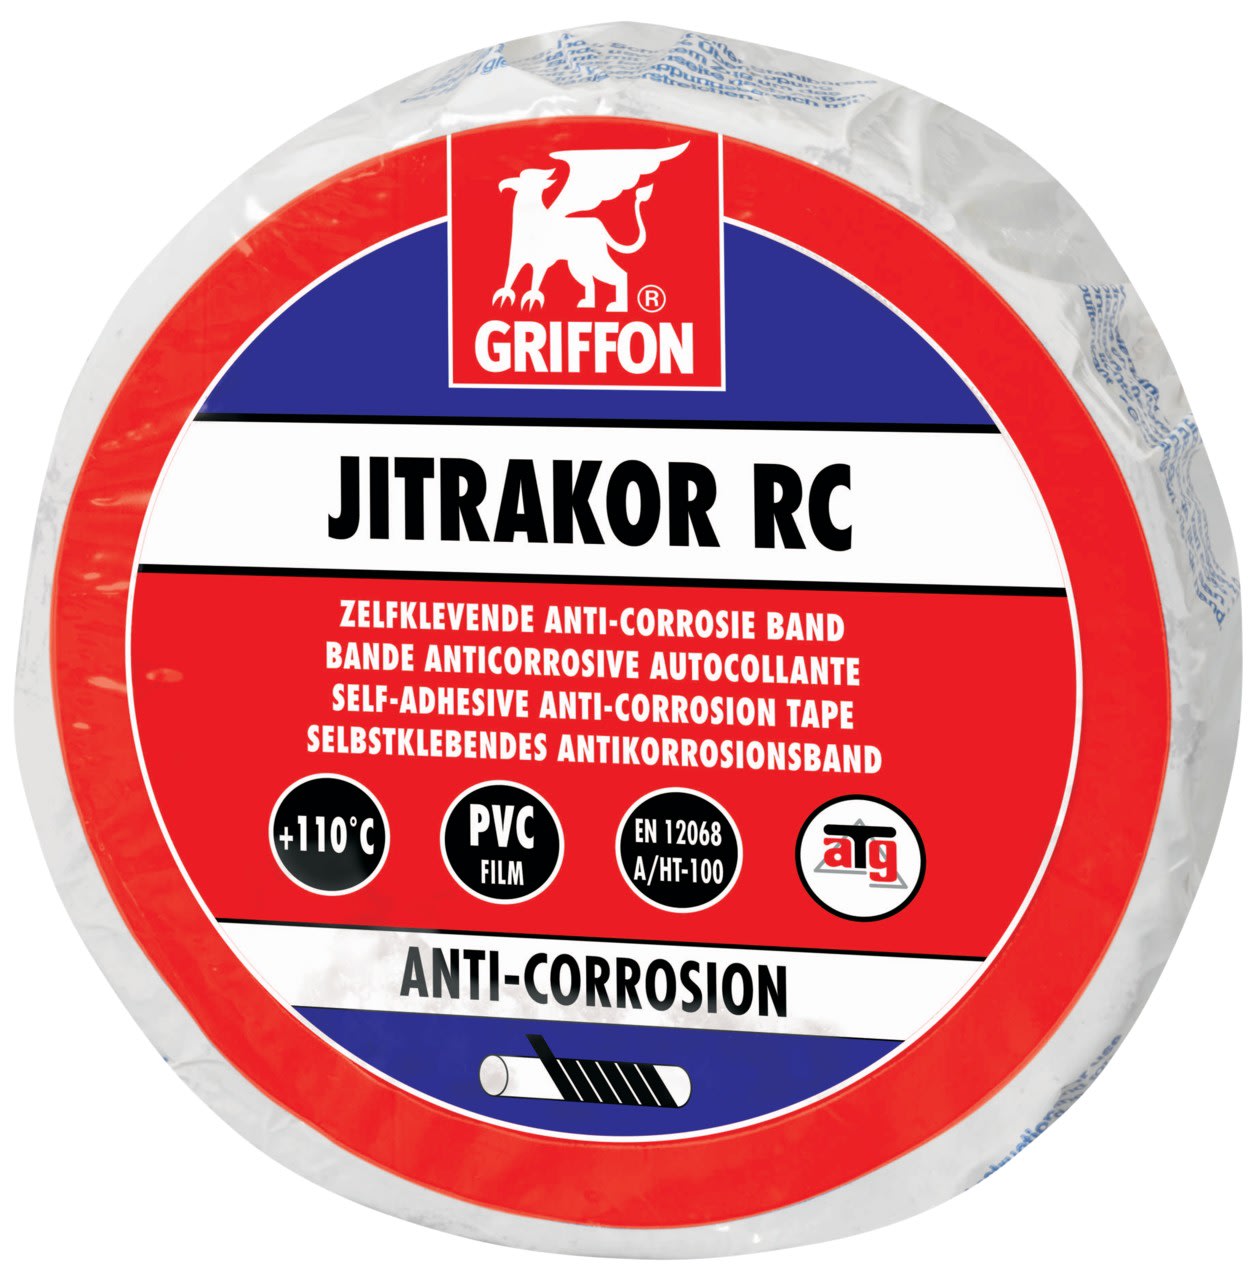 Griffon - JITRAKOR RC Bande anti-corrosion pour tuyaux chauds 10 M x 10 CM